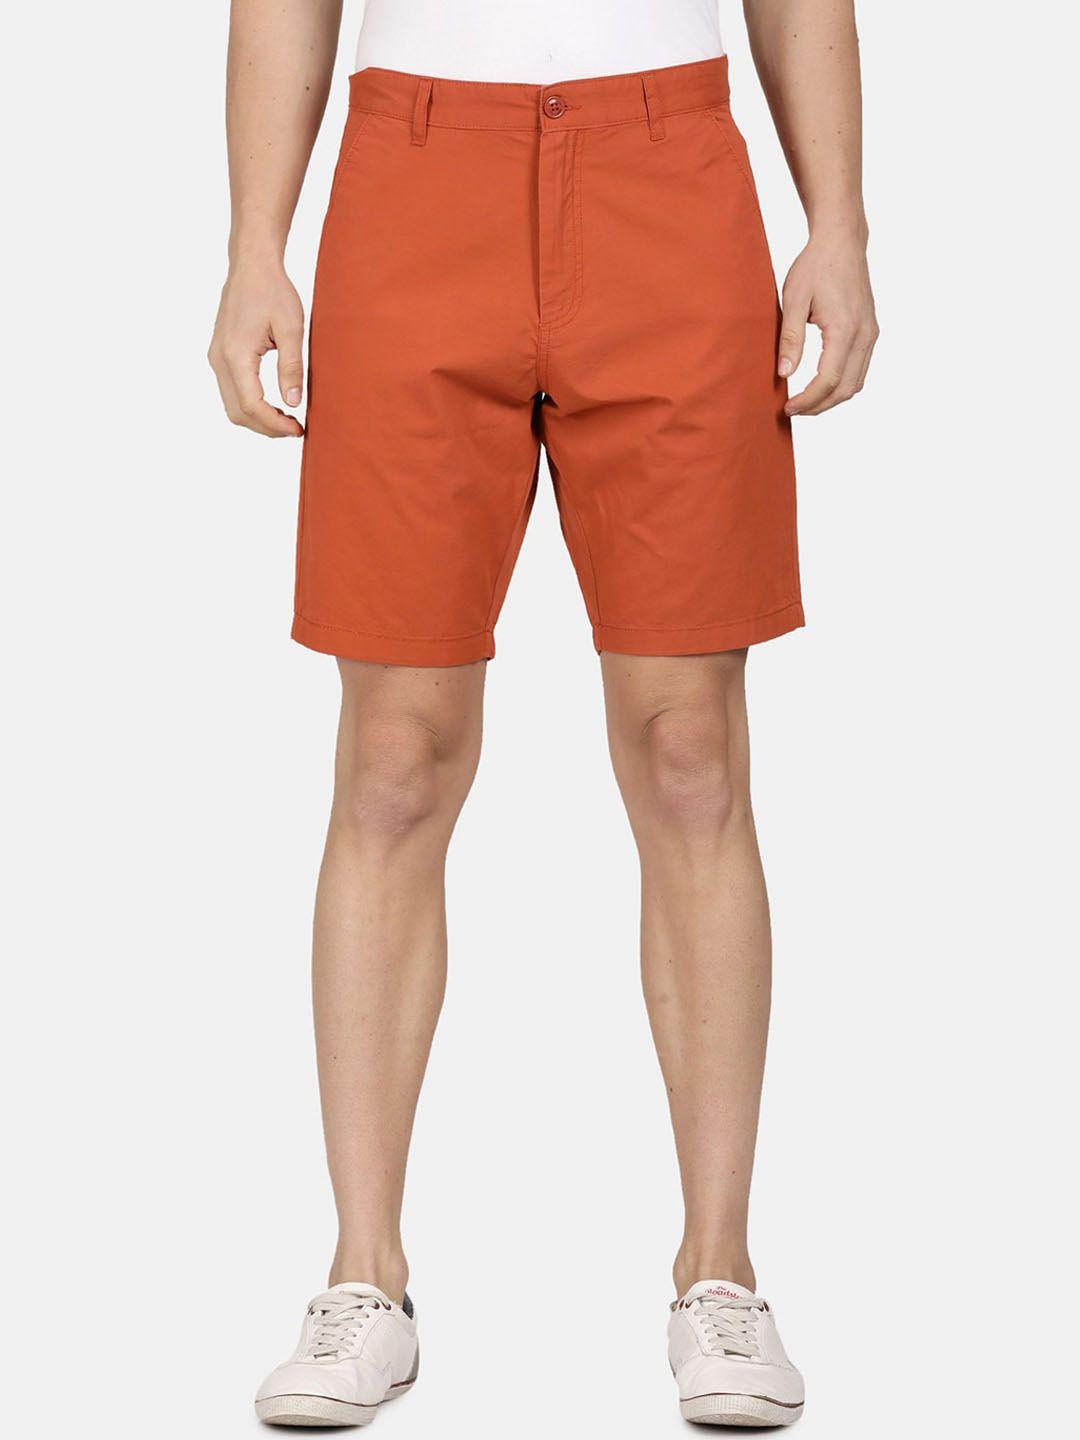 t-base-men-cotton-shorts